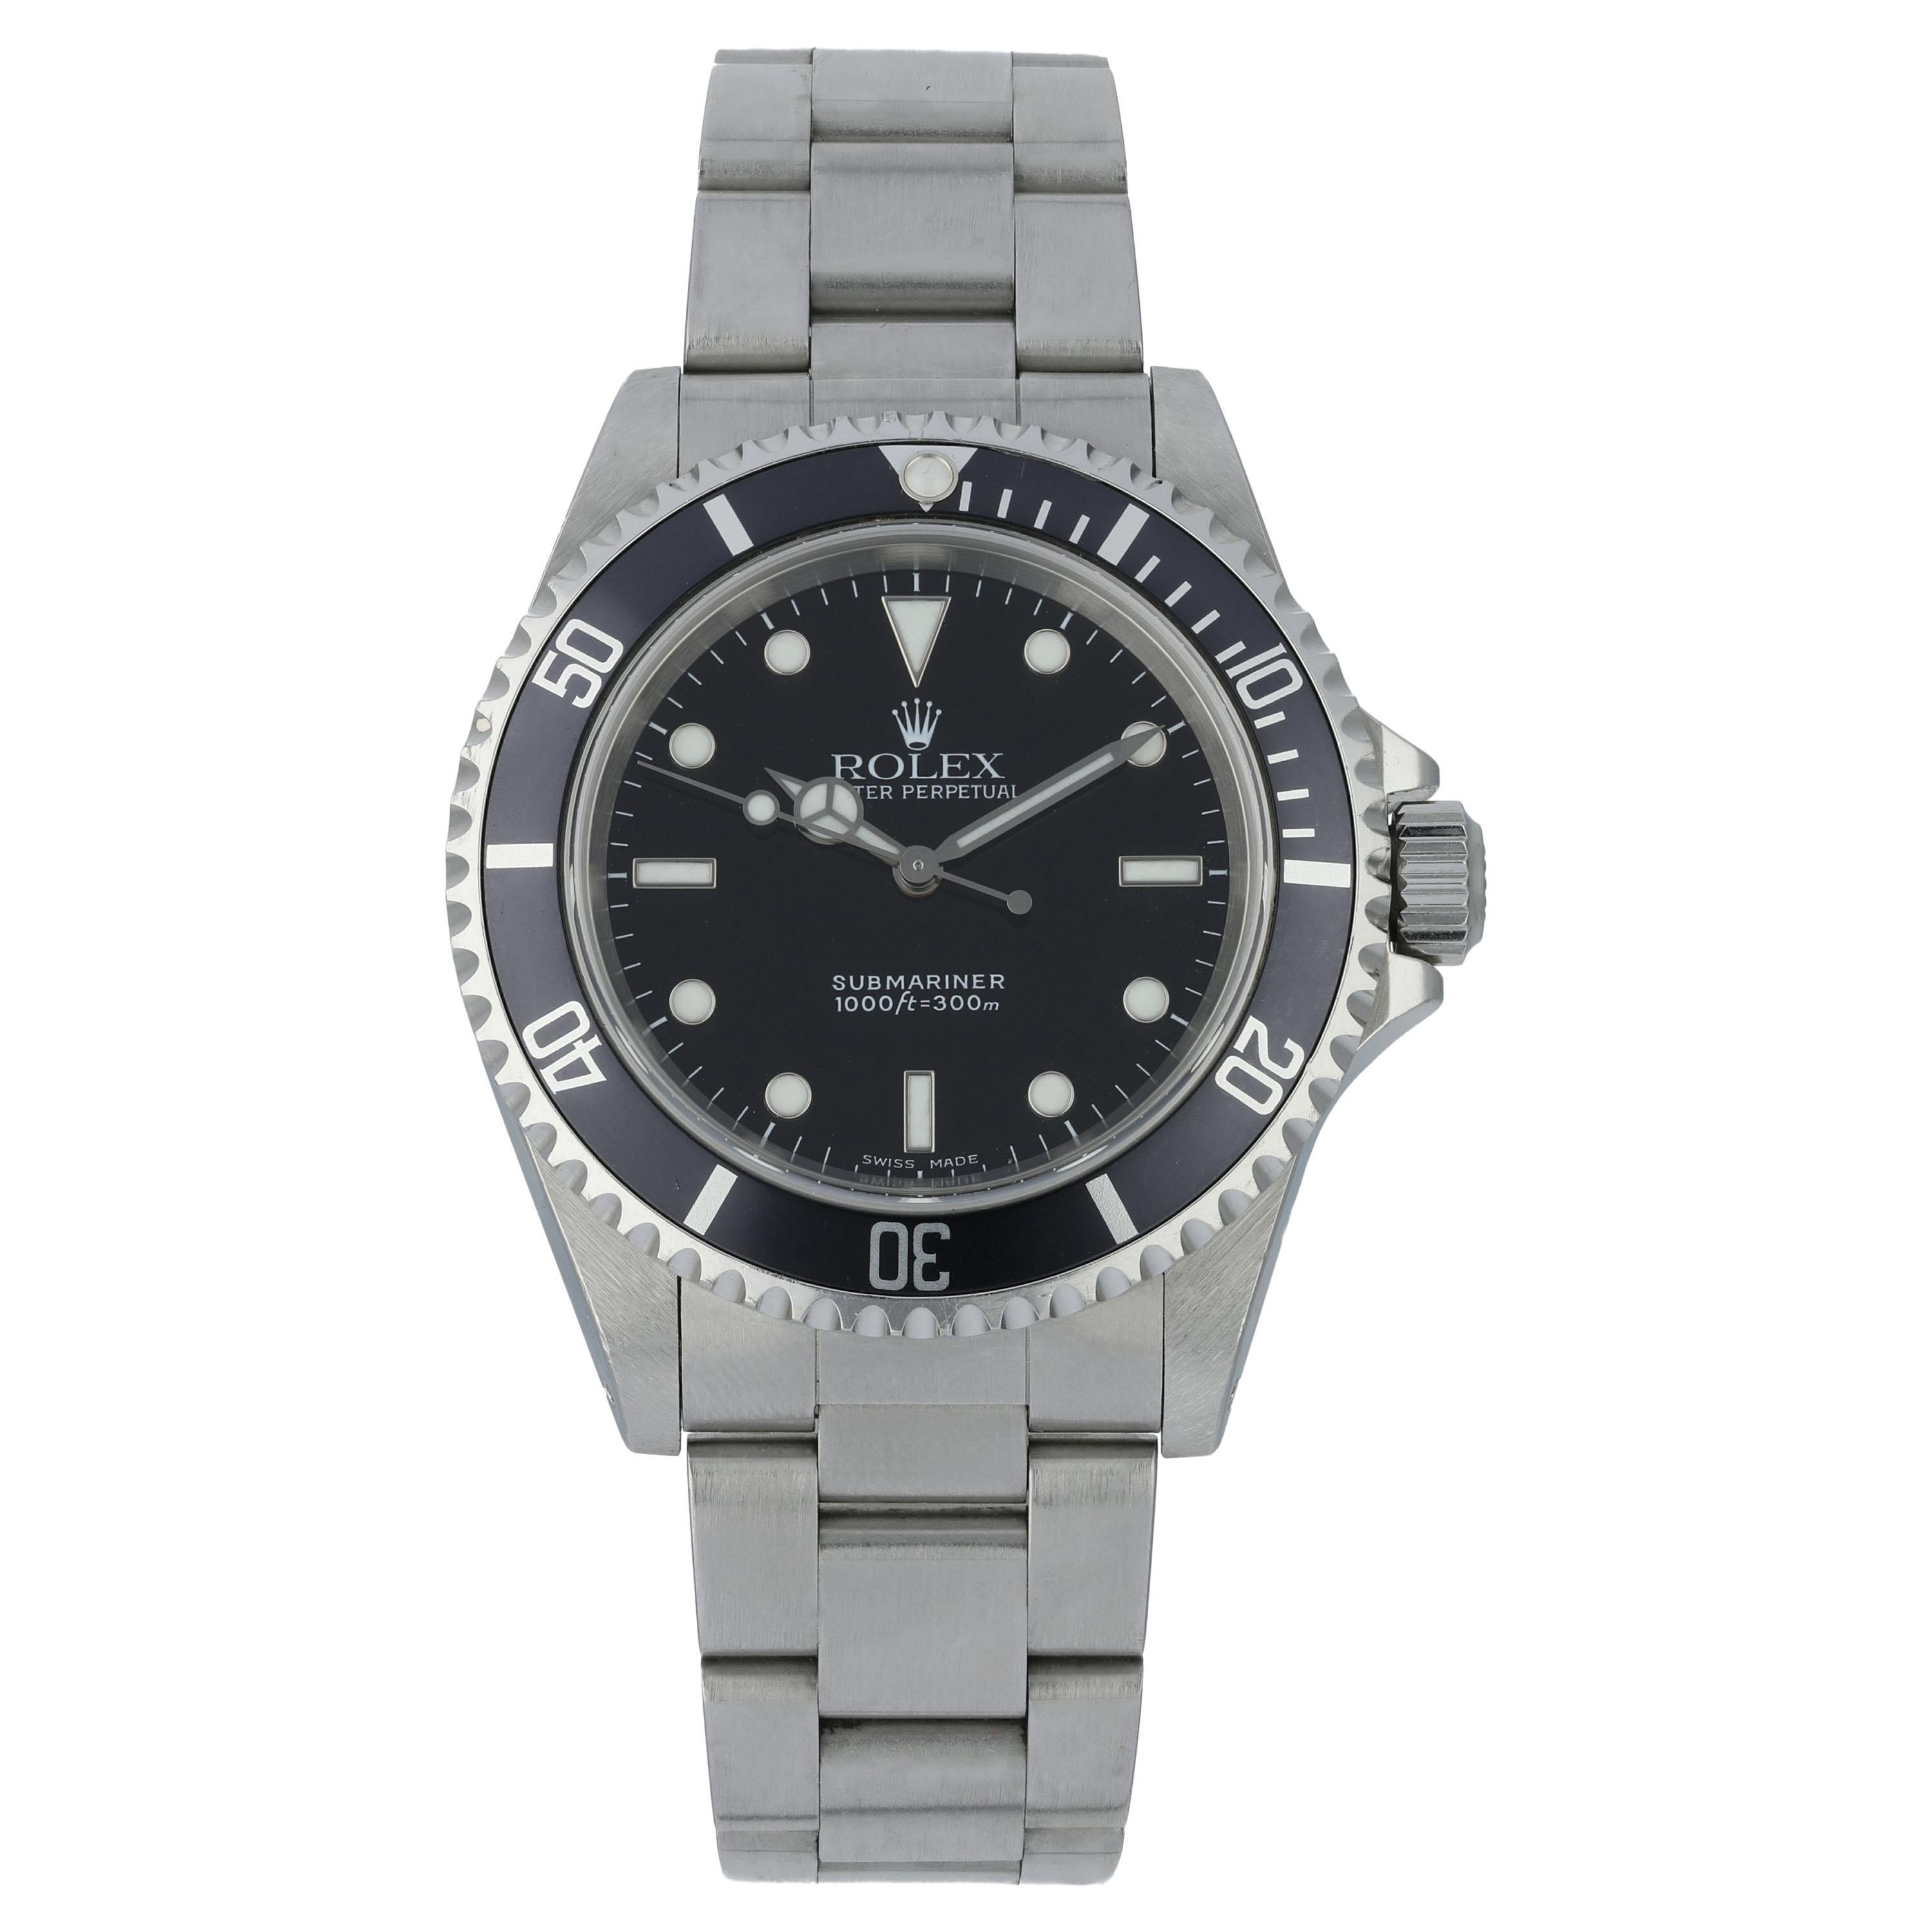 Rolex Submariner 14060 Men's Watch For Sale